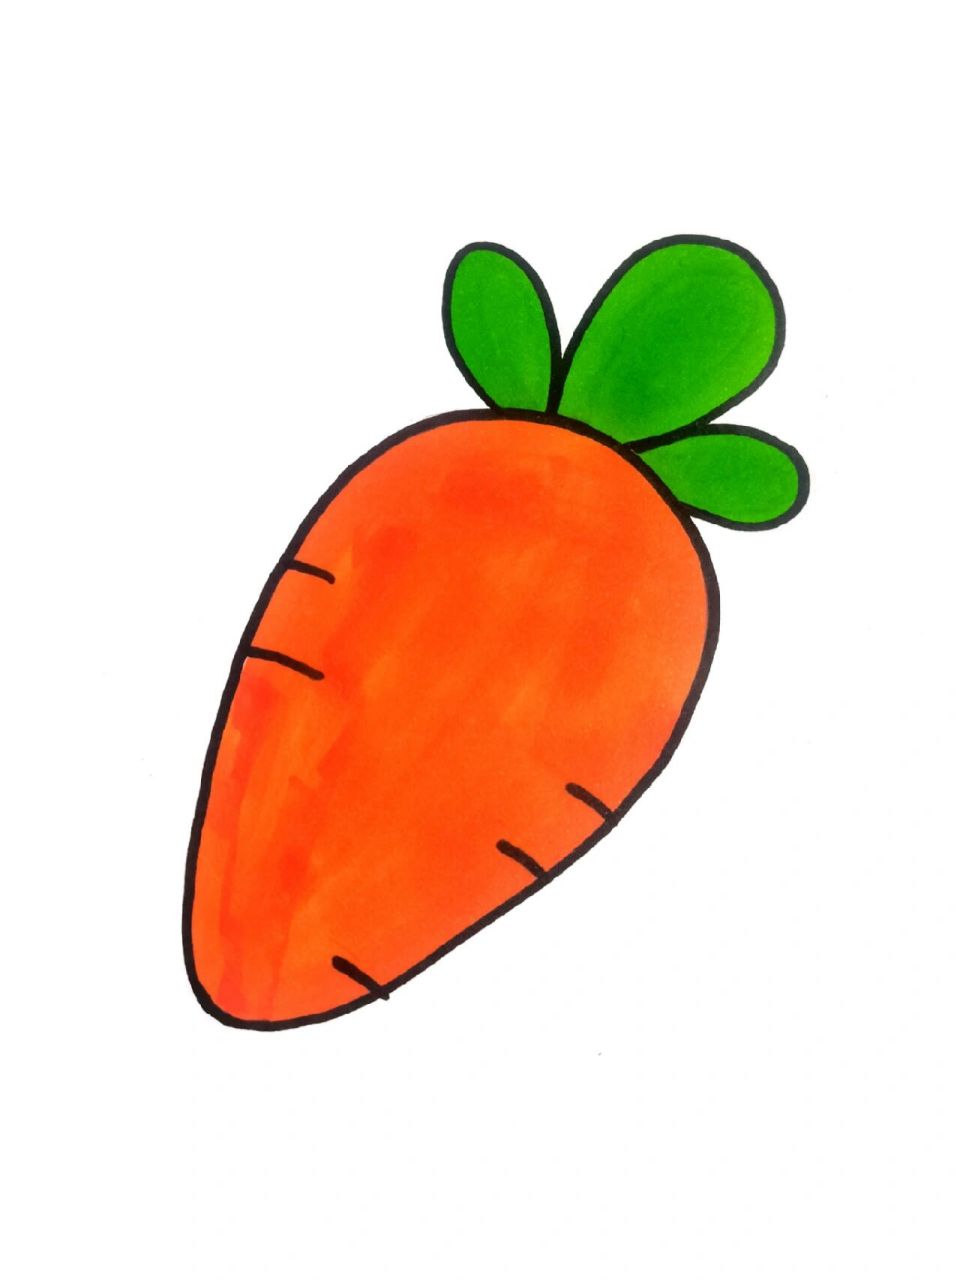 胡萝卜简笔画,蔬菜简笔画 胡萝卜简笔画,蔬菜简笔画